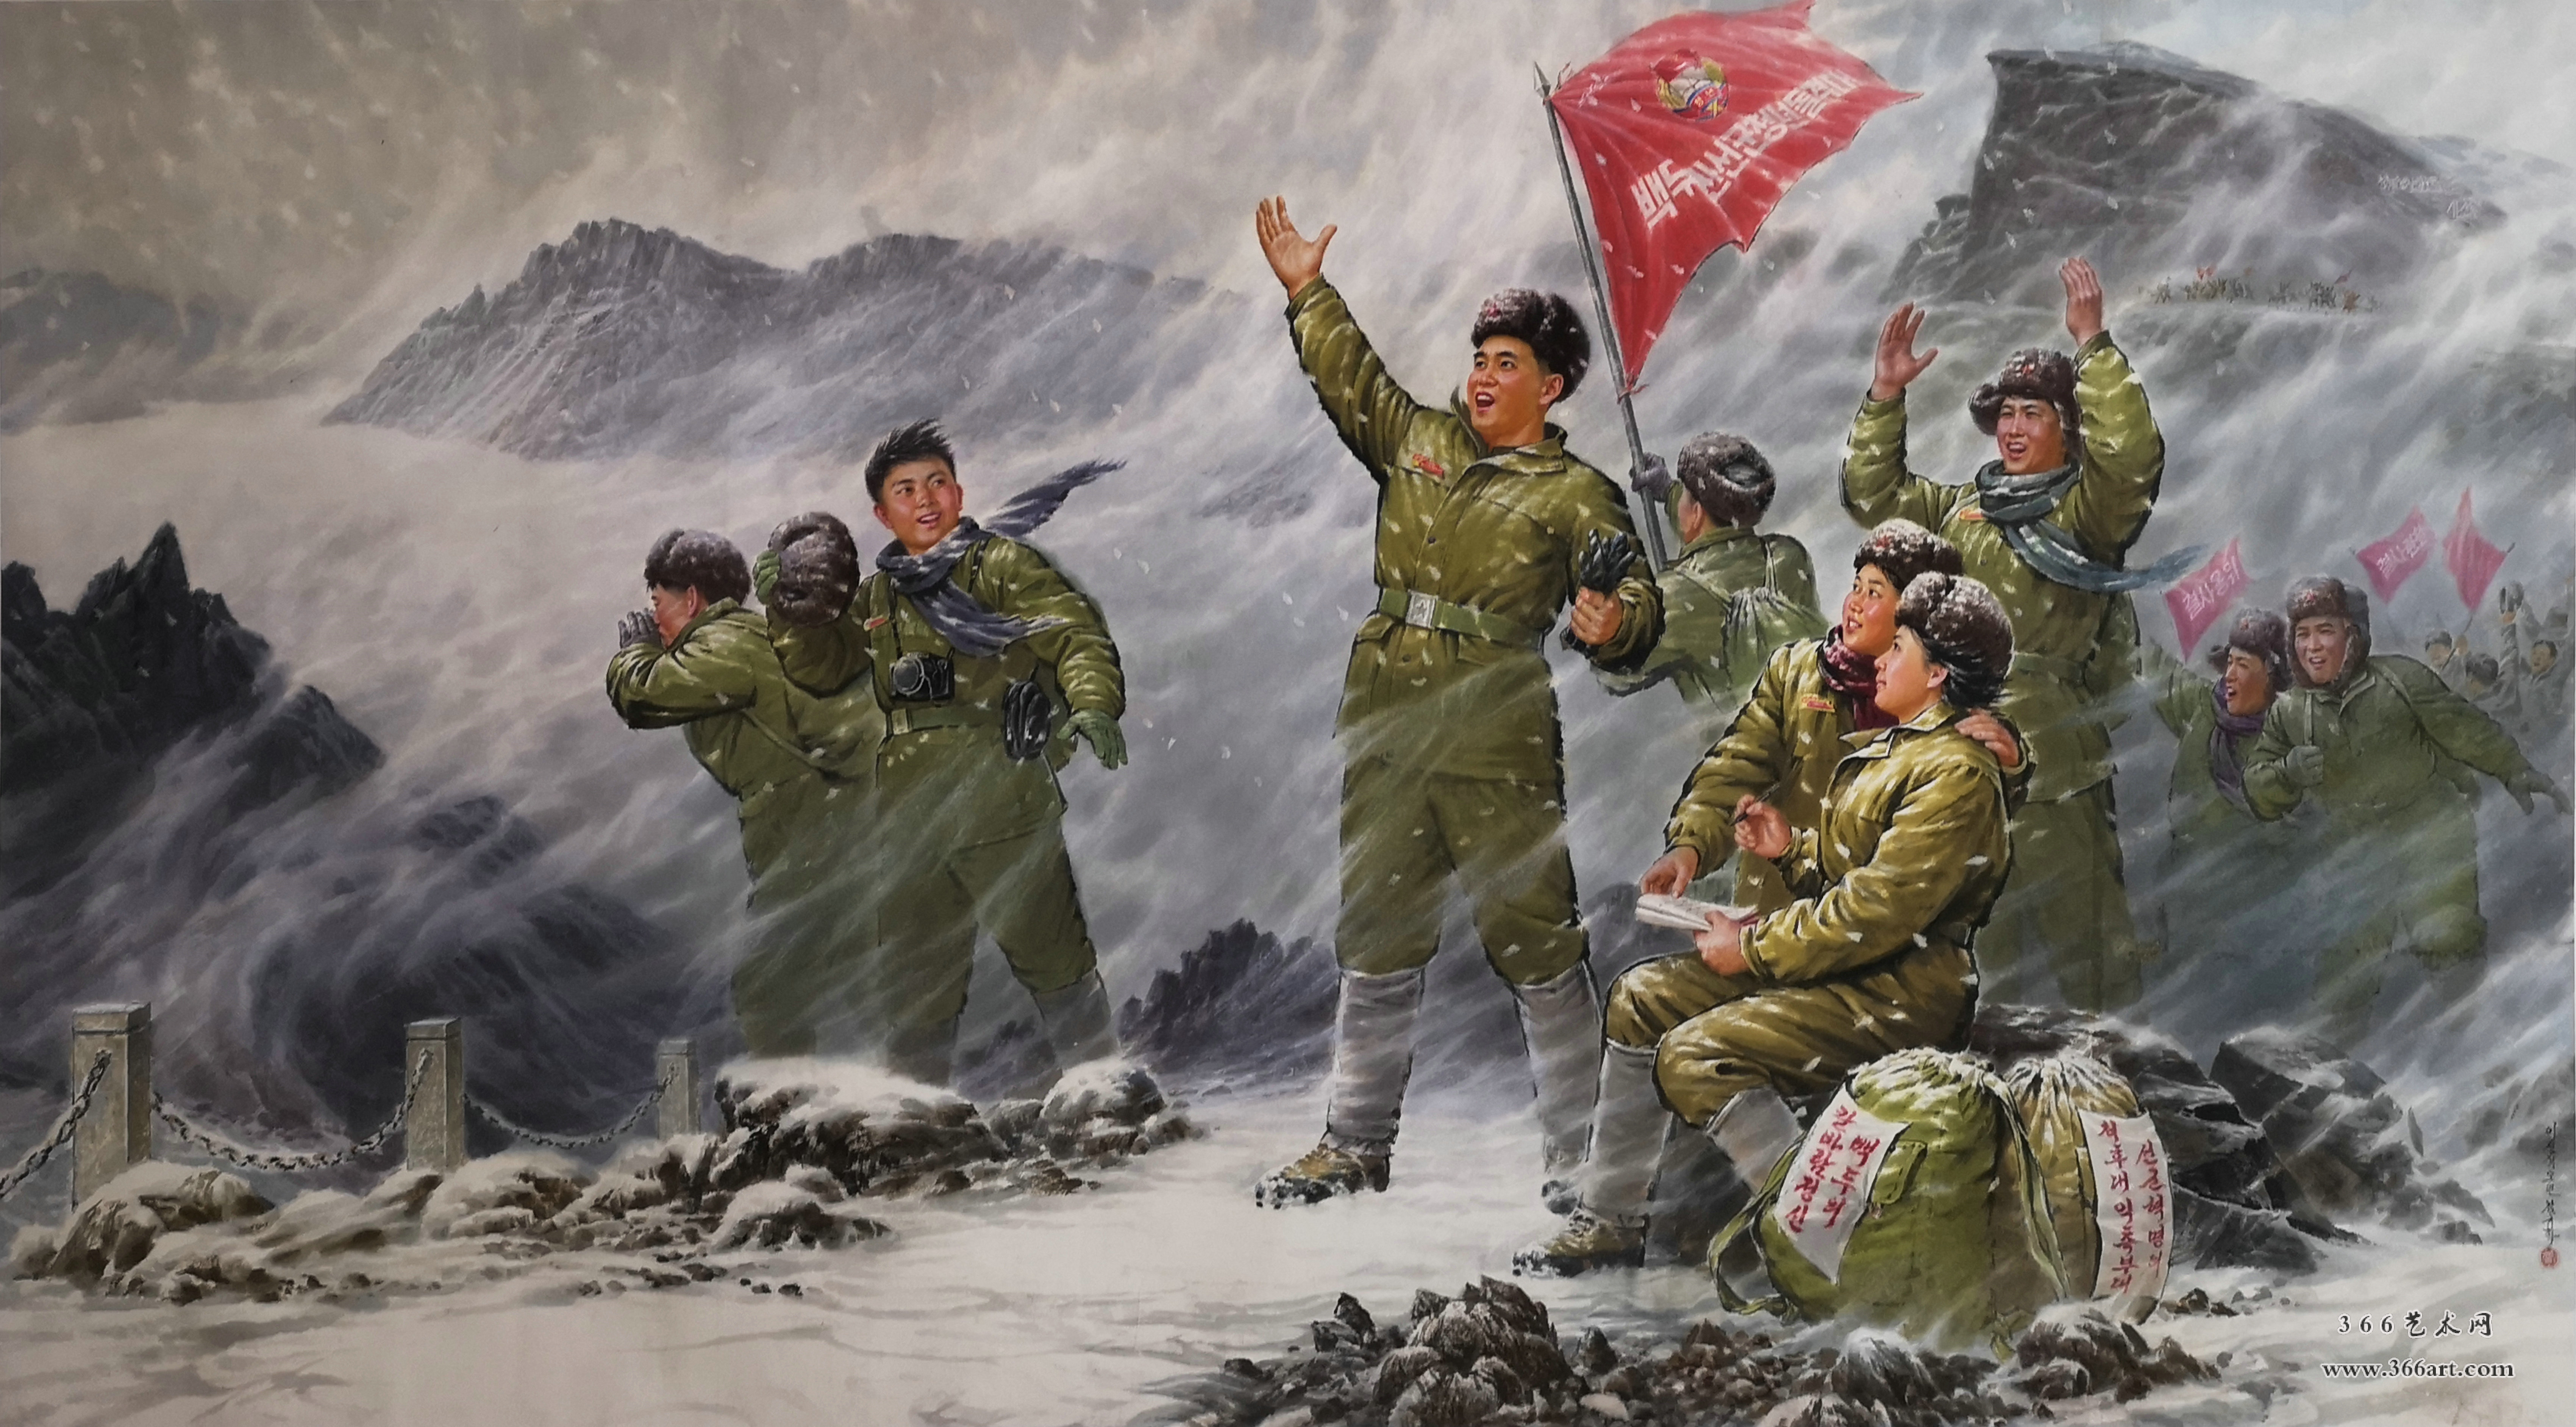 【朝鲜主体画】金奎鹤 登上革命圣地天池 2015年 297 x 162cm